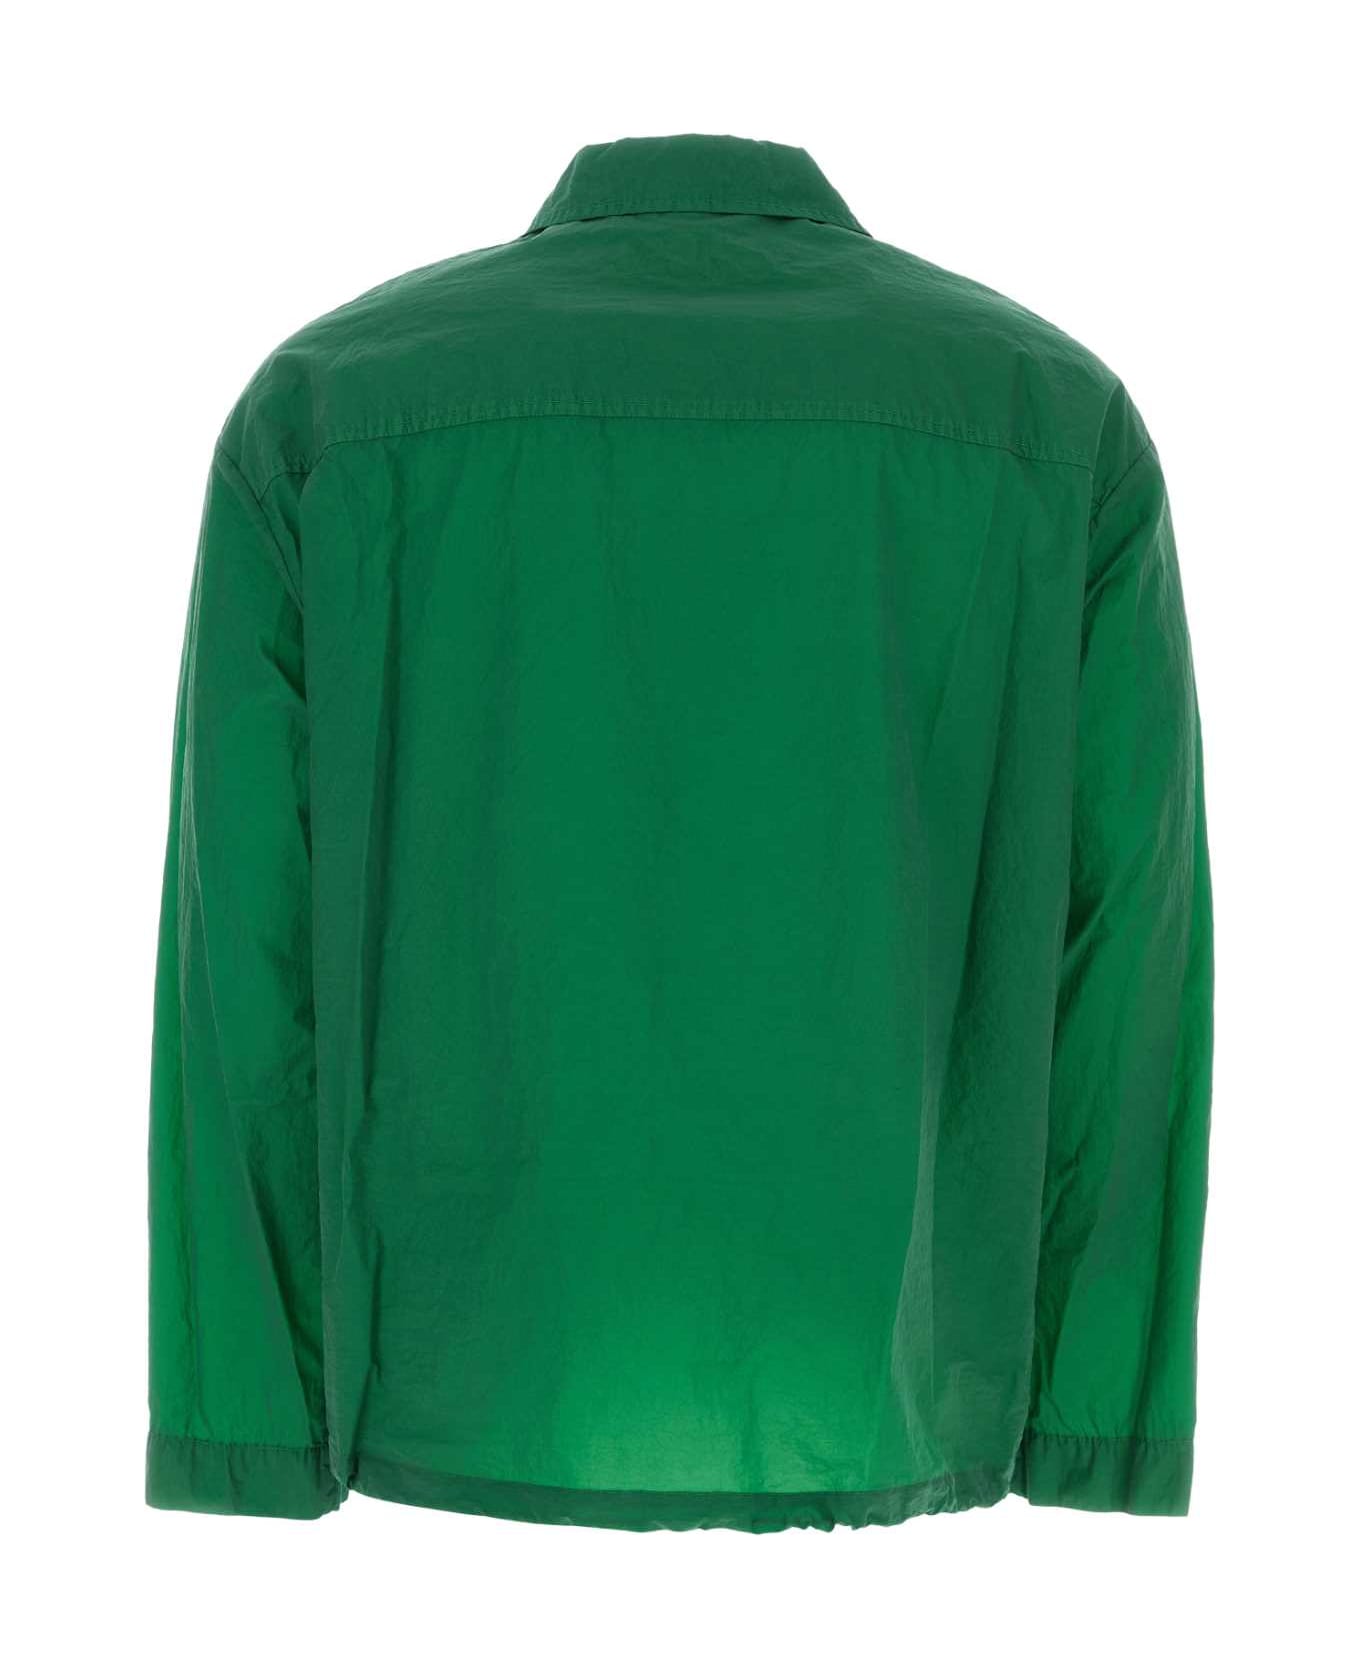 Dries Van Noten Grass Green Coated Denim Vormac Jacket - 604